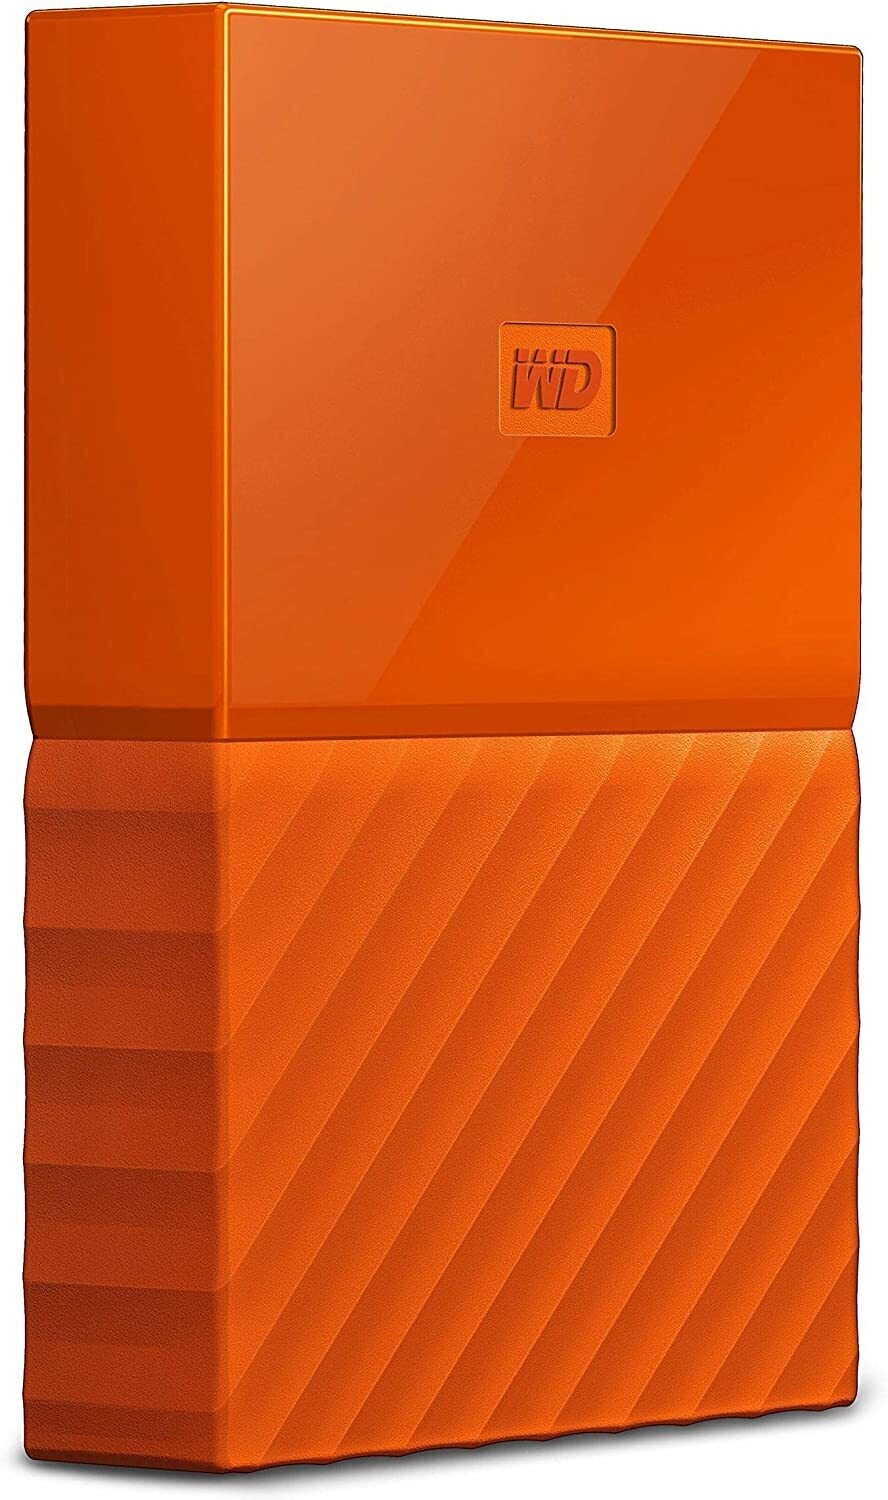 WD 1TB My Passport USB 3.0 External Hard drive, Orange